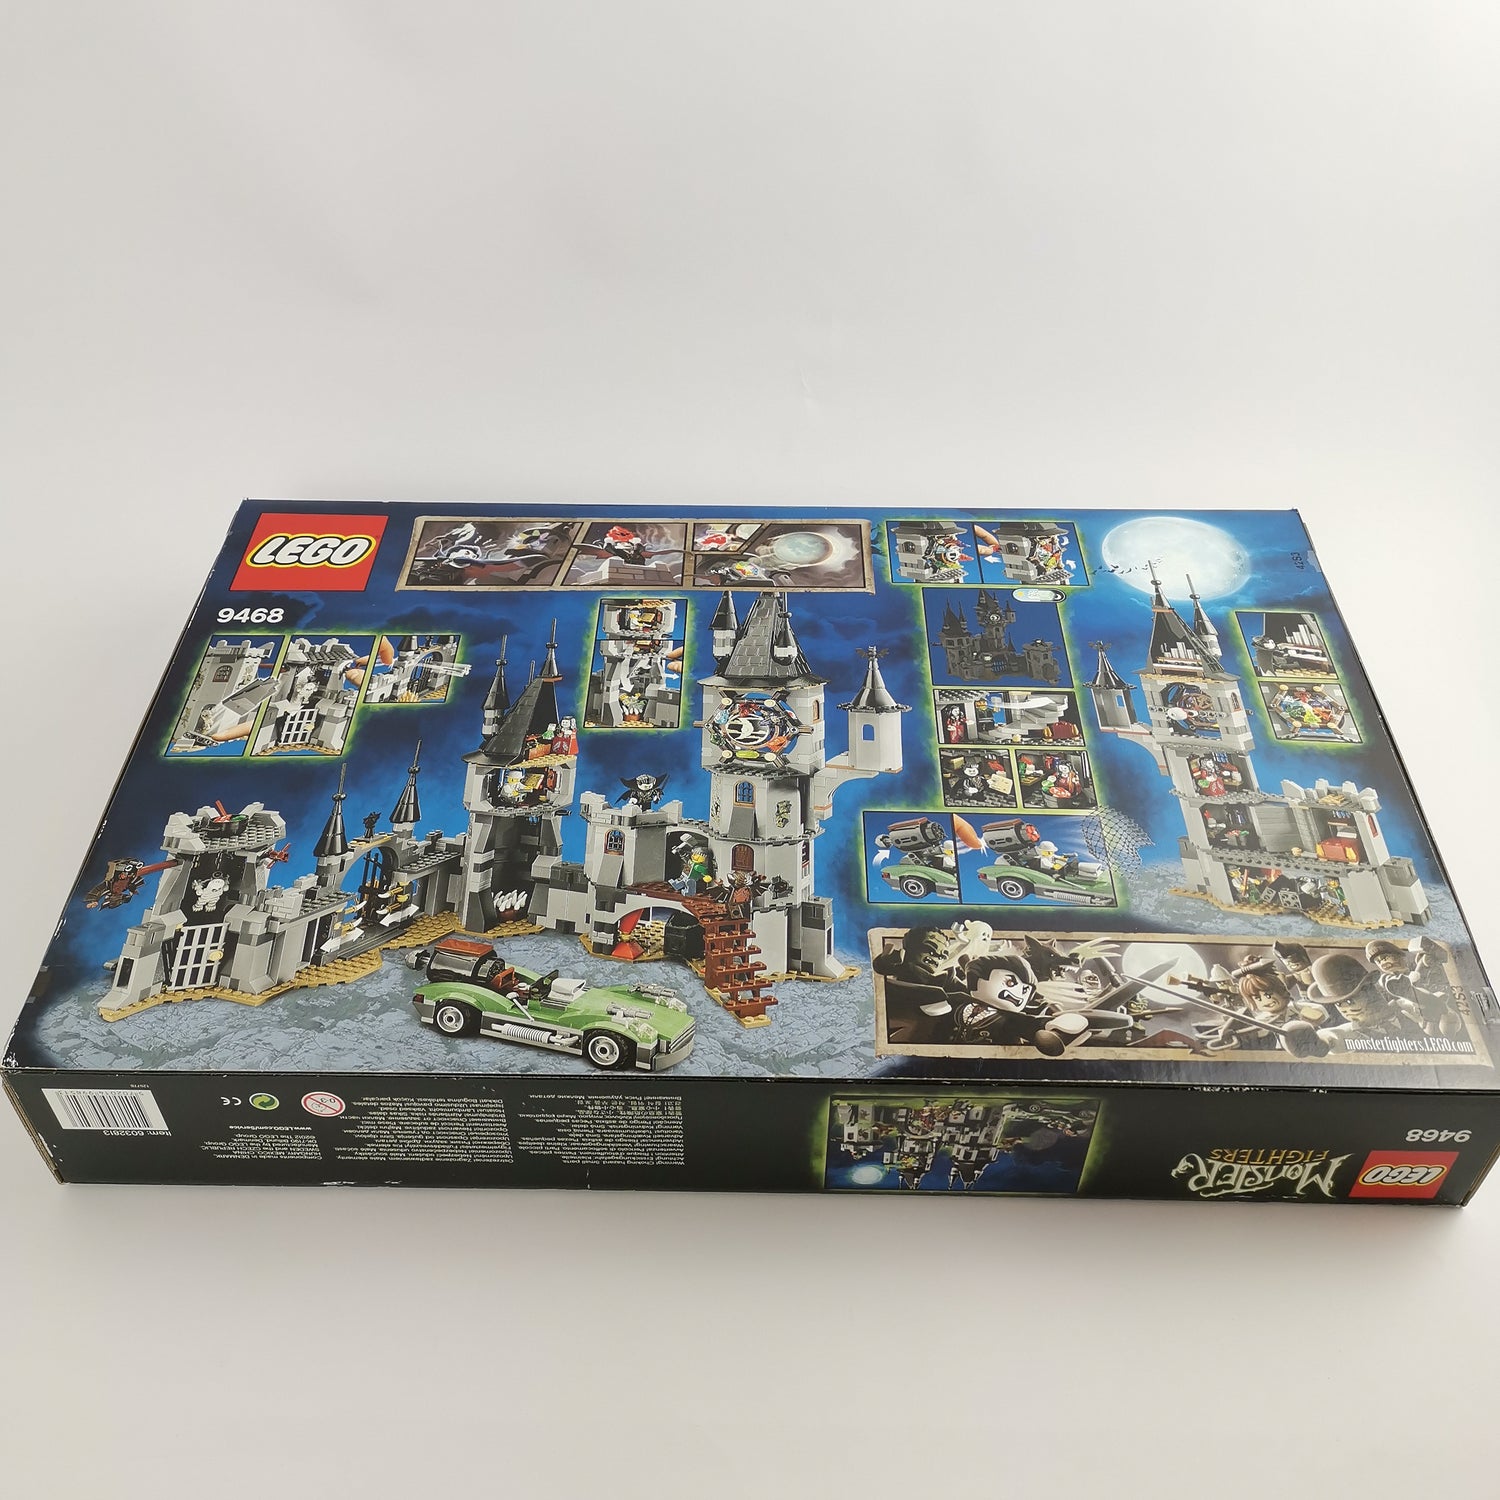 Lego Set 9468 (9-14 Jahre) : Monster Fighters Vampirschloss | OVP NEU NEW